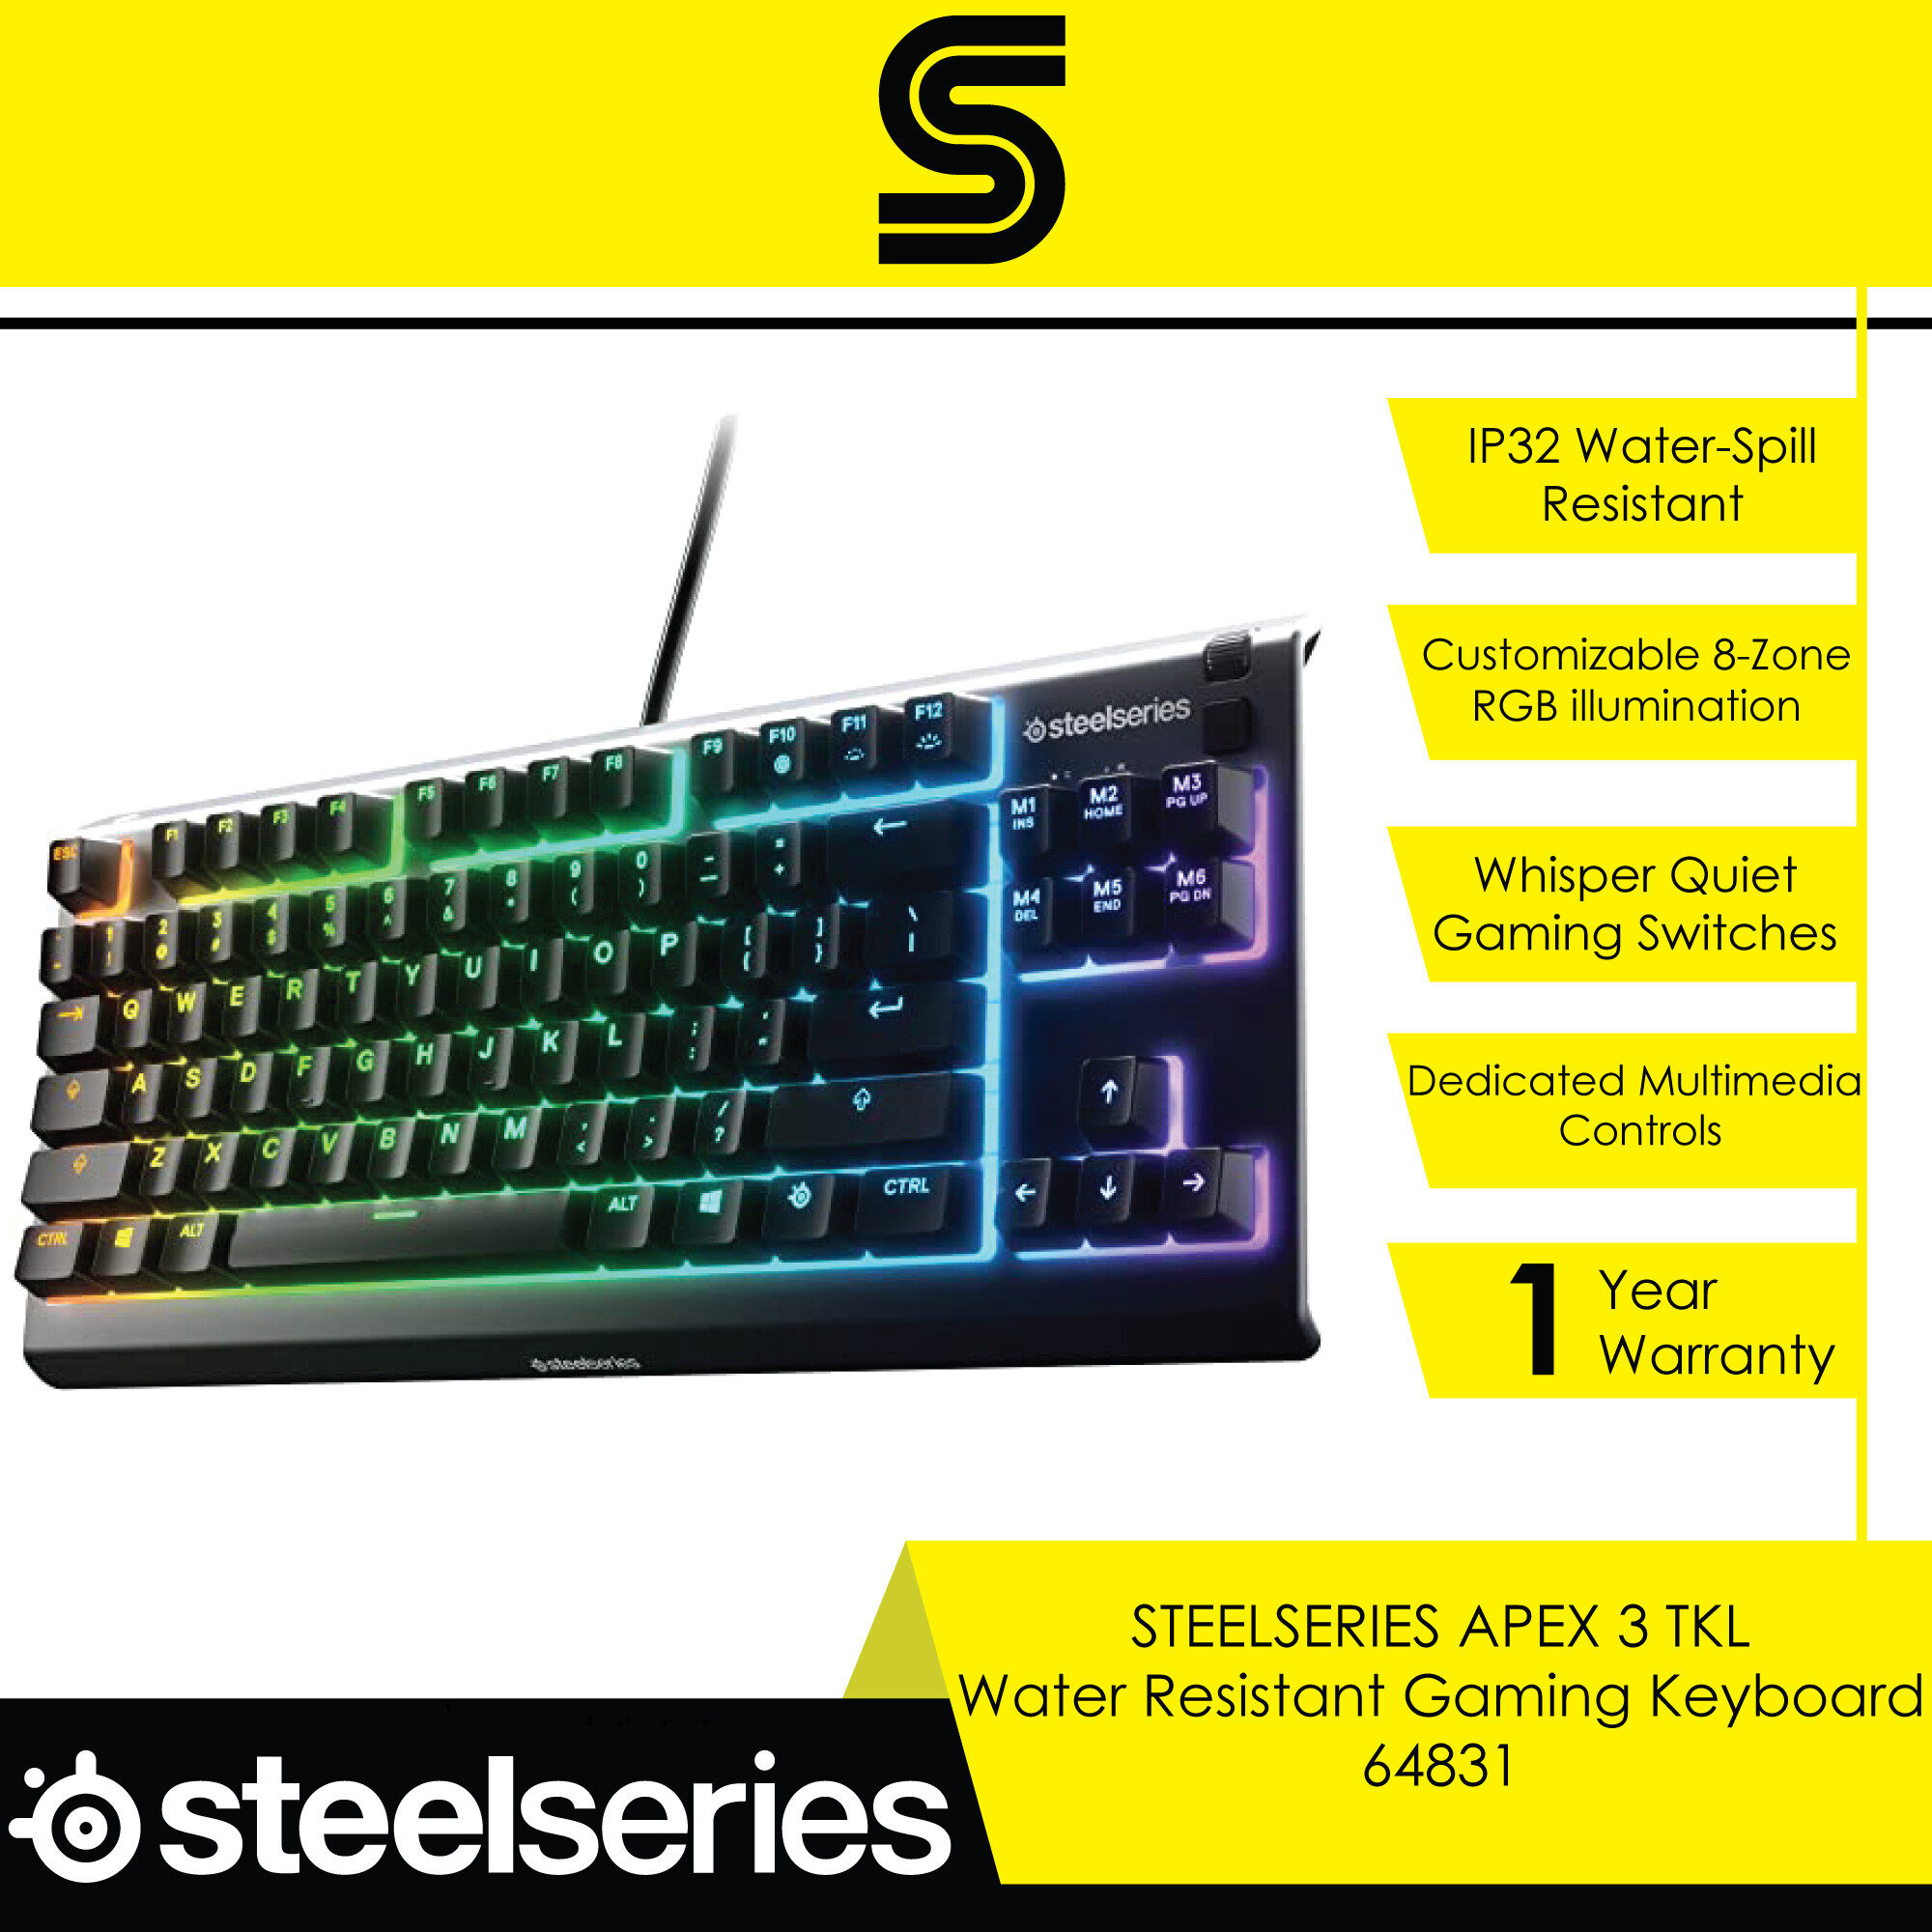 STEELSERIES APEX 3 TKL Water Resistant Gaming Keyboard - 64831